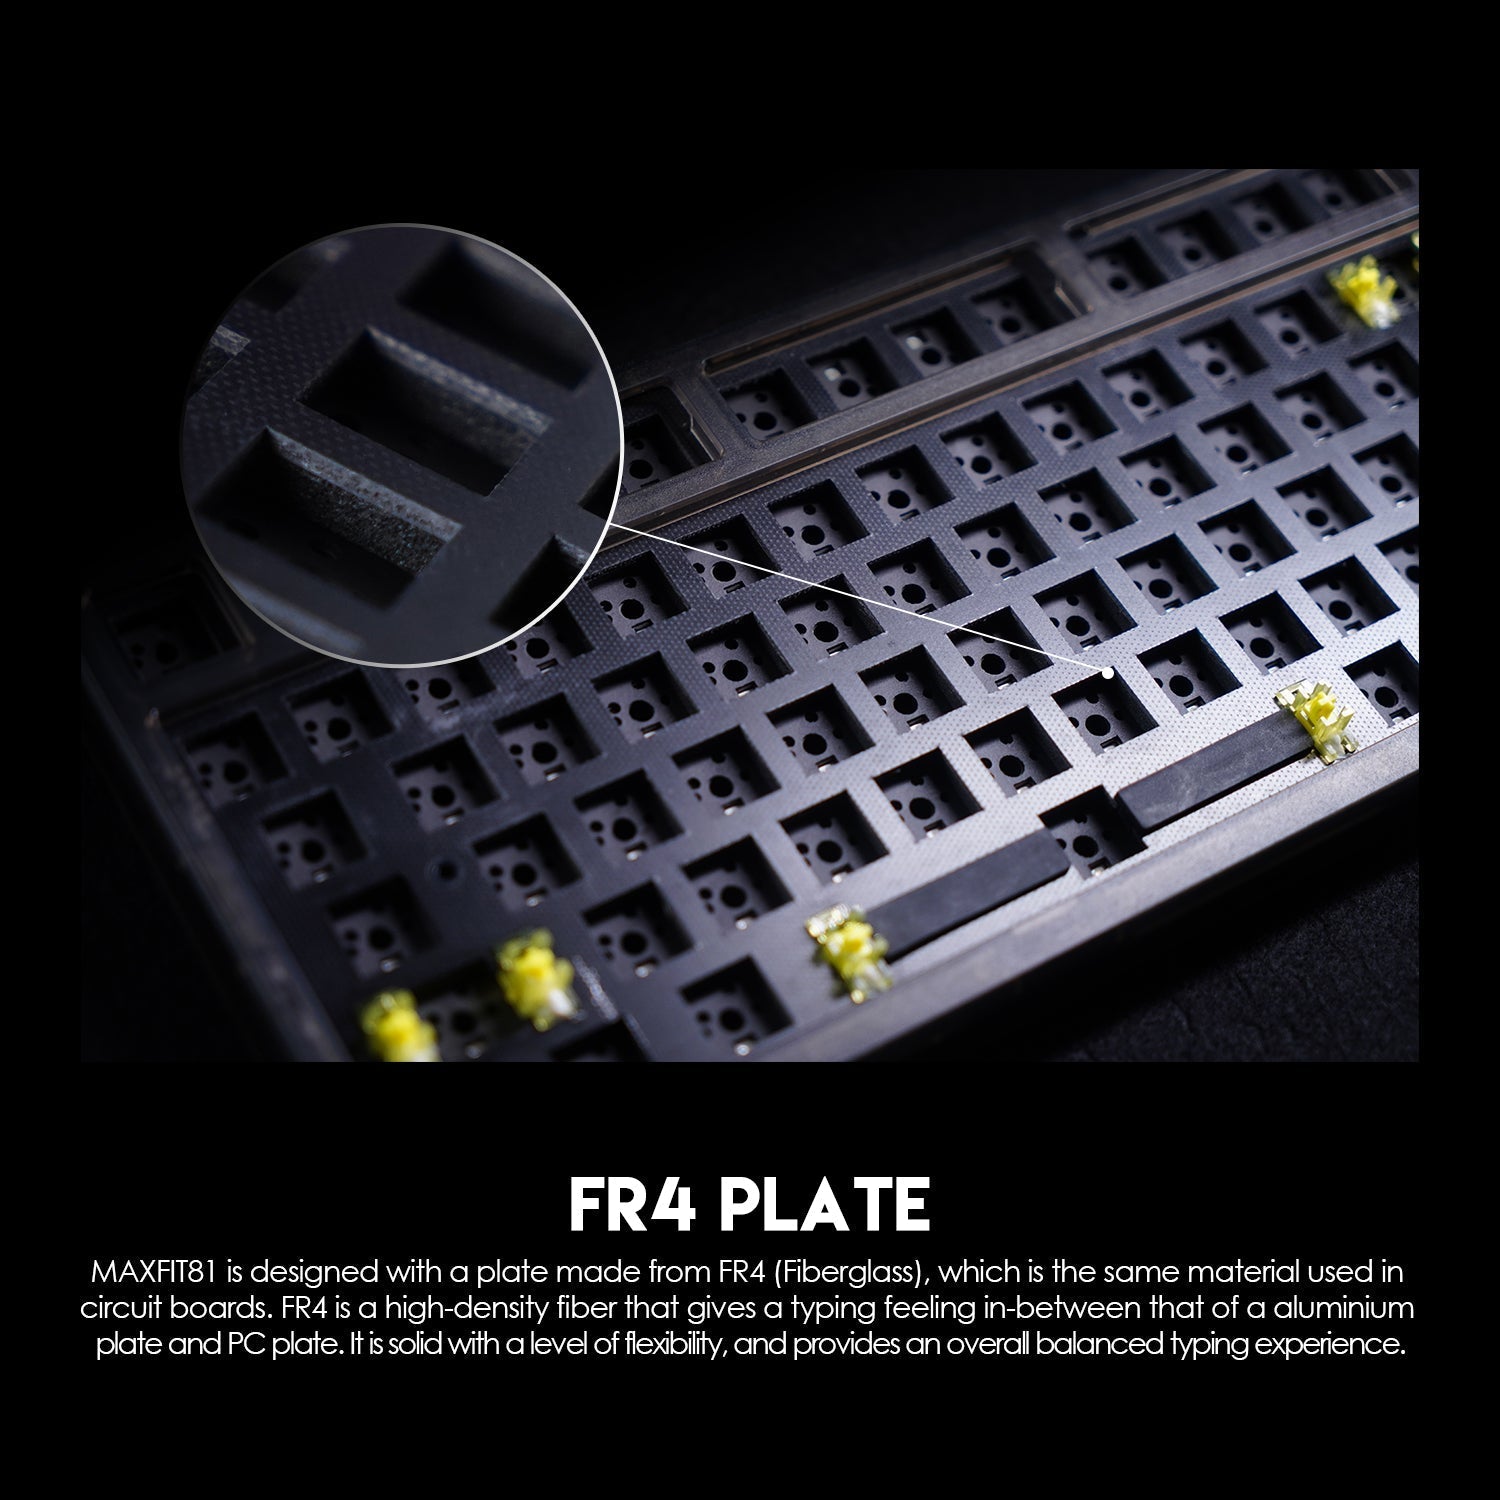 Fantech Maxfit81 MK910 PBT Frost Wireless Modular Mechanical Gaming Keyboard